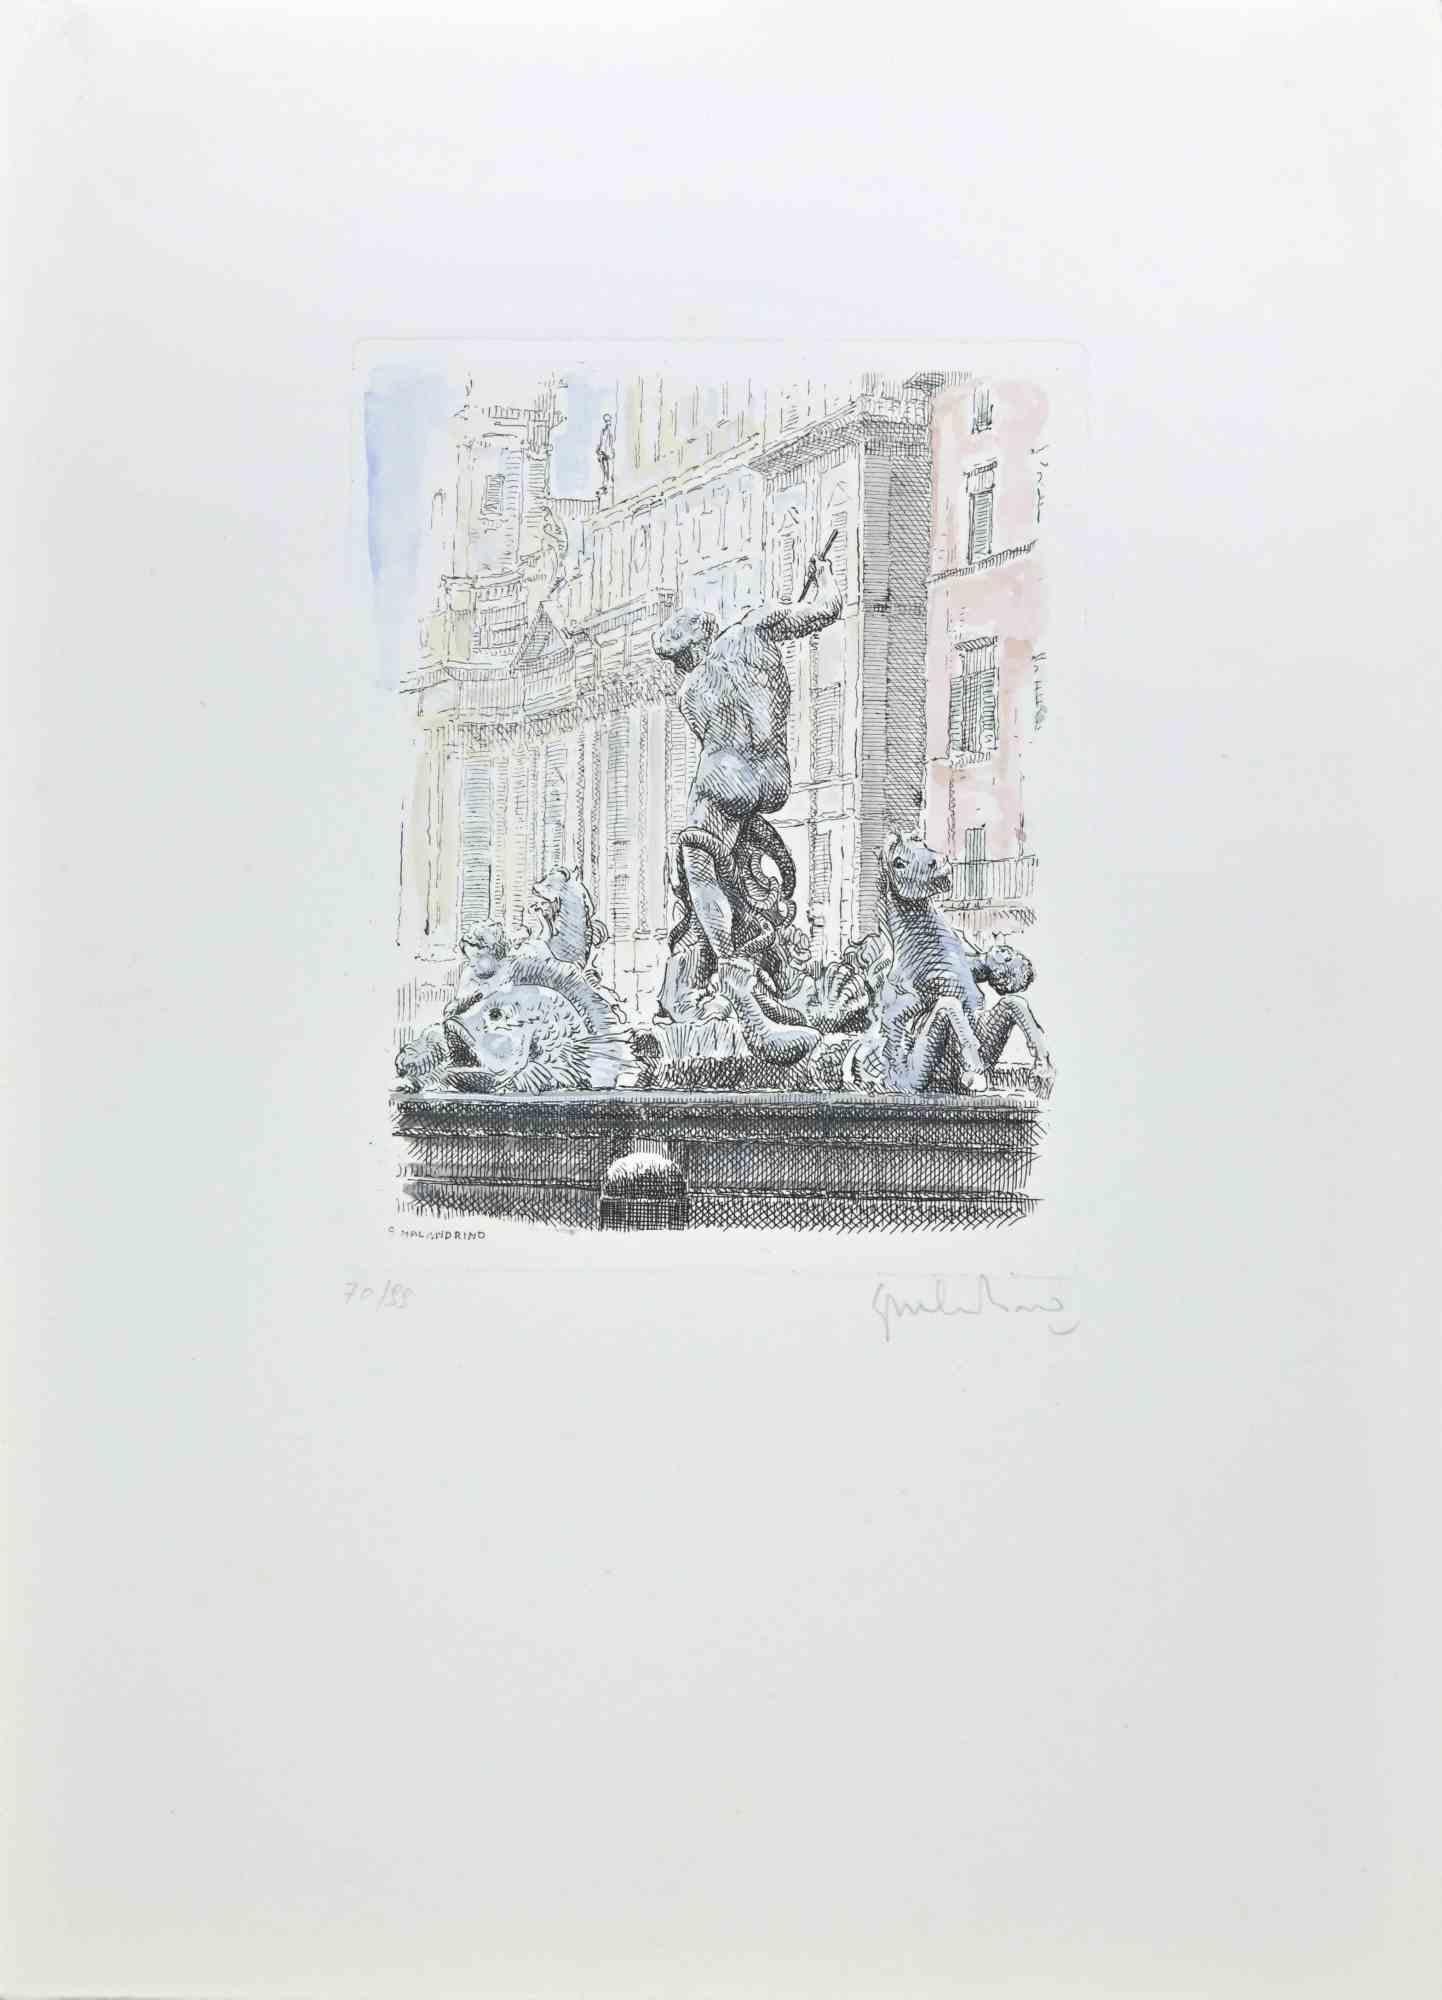 Fountain of the Triton ist ein Kunstwerk von Giuseppe Malandrino.

Originaldruck in Radiertechnik, von Hand aquarelliert.

Vom Künstler in der rechten unteren Ecke mit Bleistift handsigniert.

Nummerierte Auflage von 99 Exemplaren.

Guter Zustand.